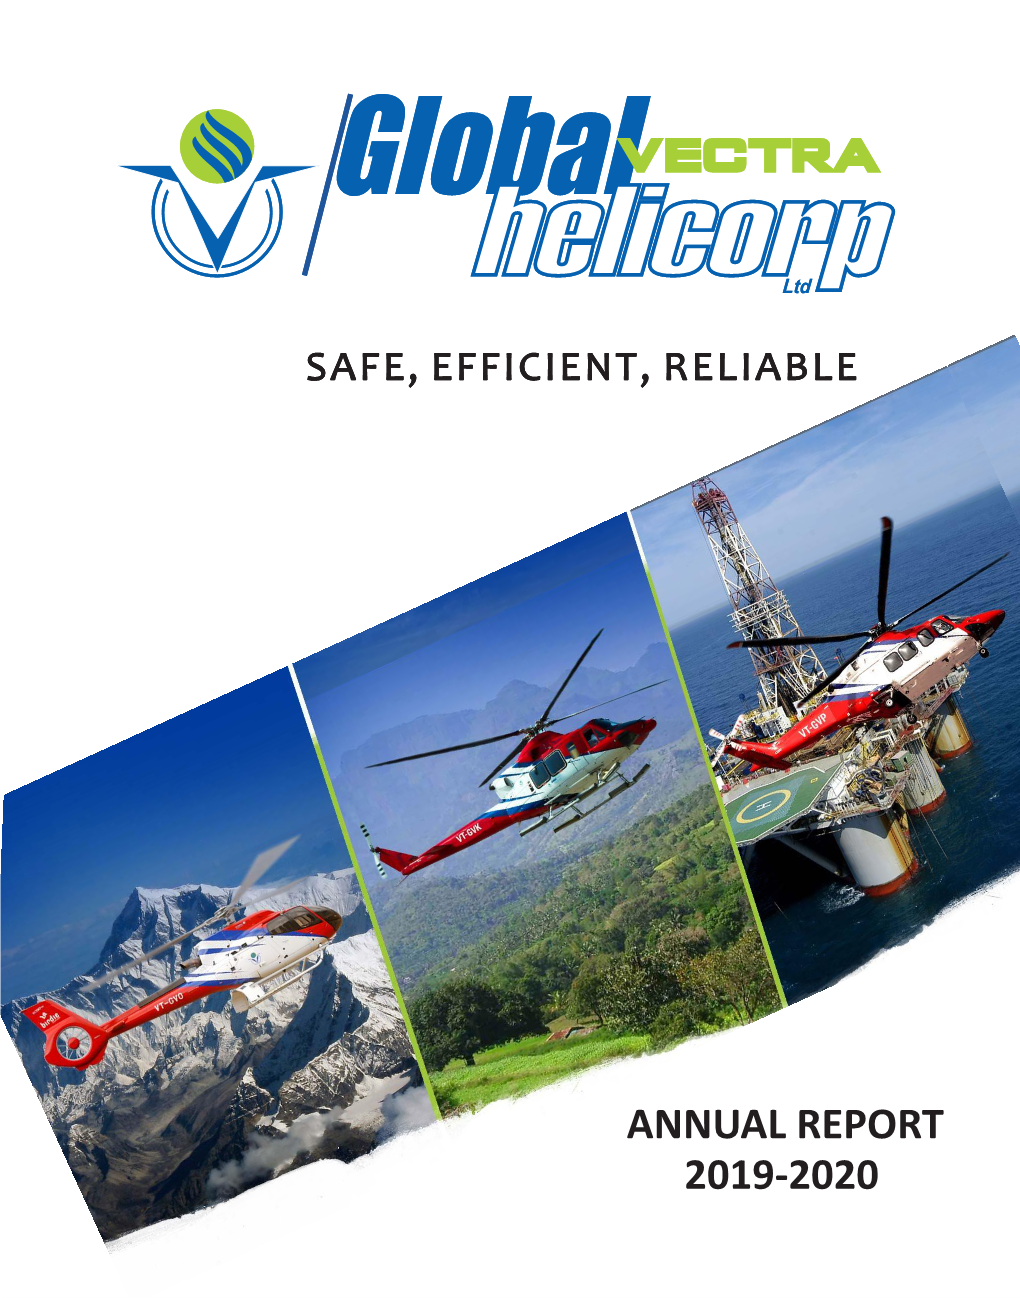 Annual Report Annual Report 201 -209 20